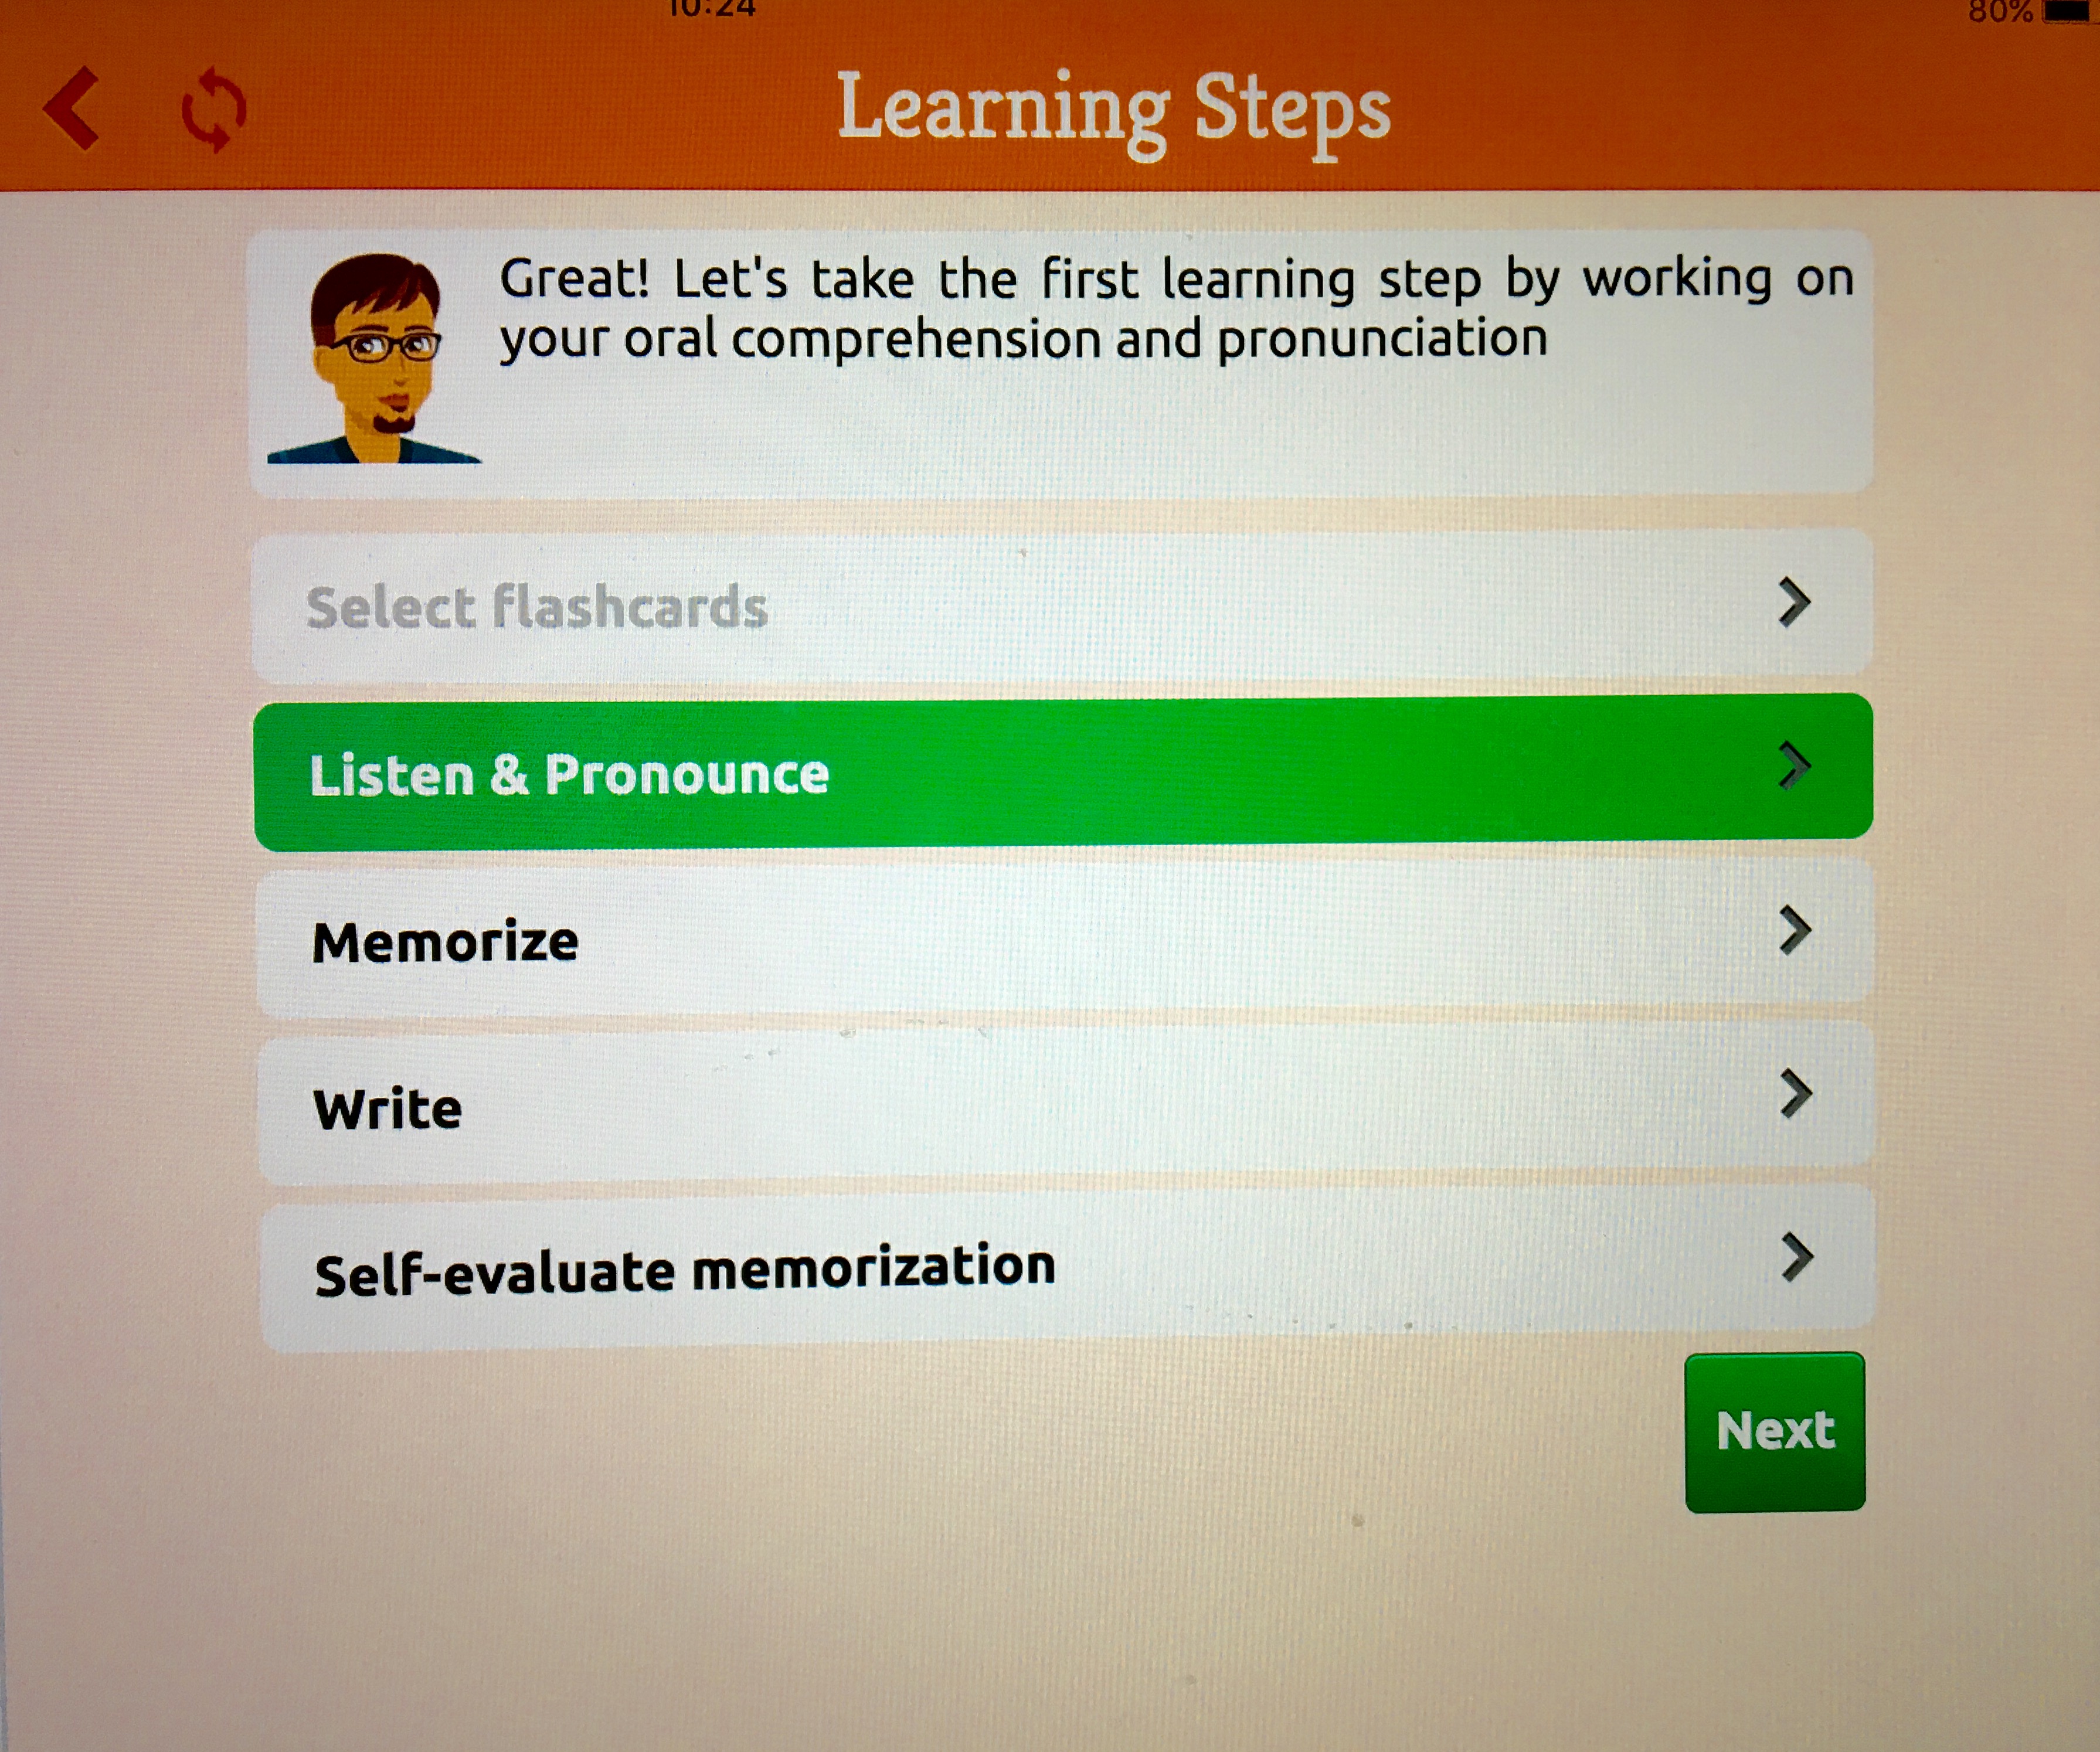 Mosalinguag Learning steps